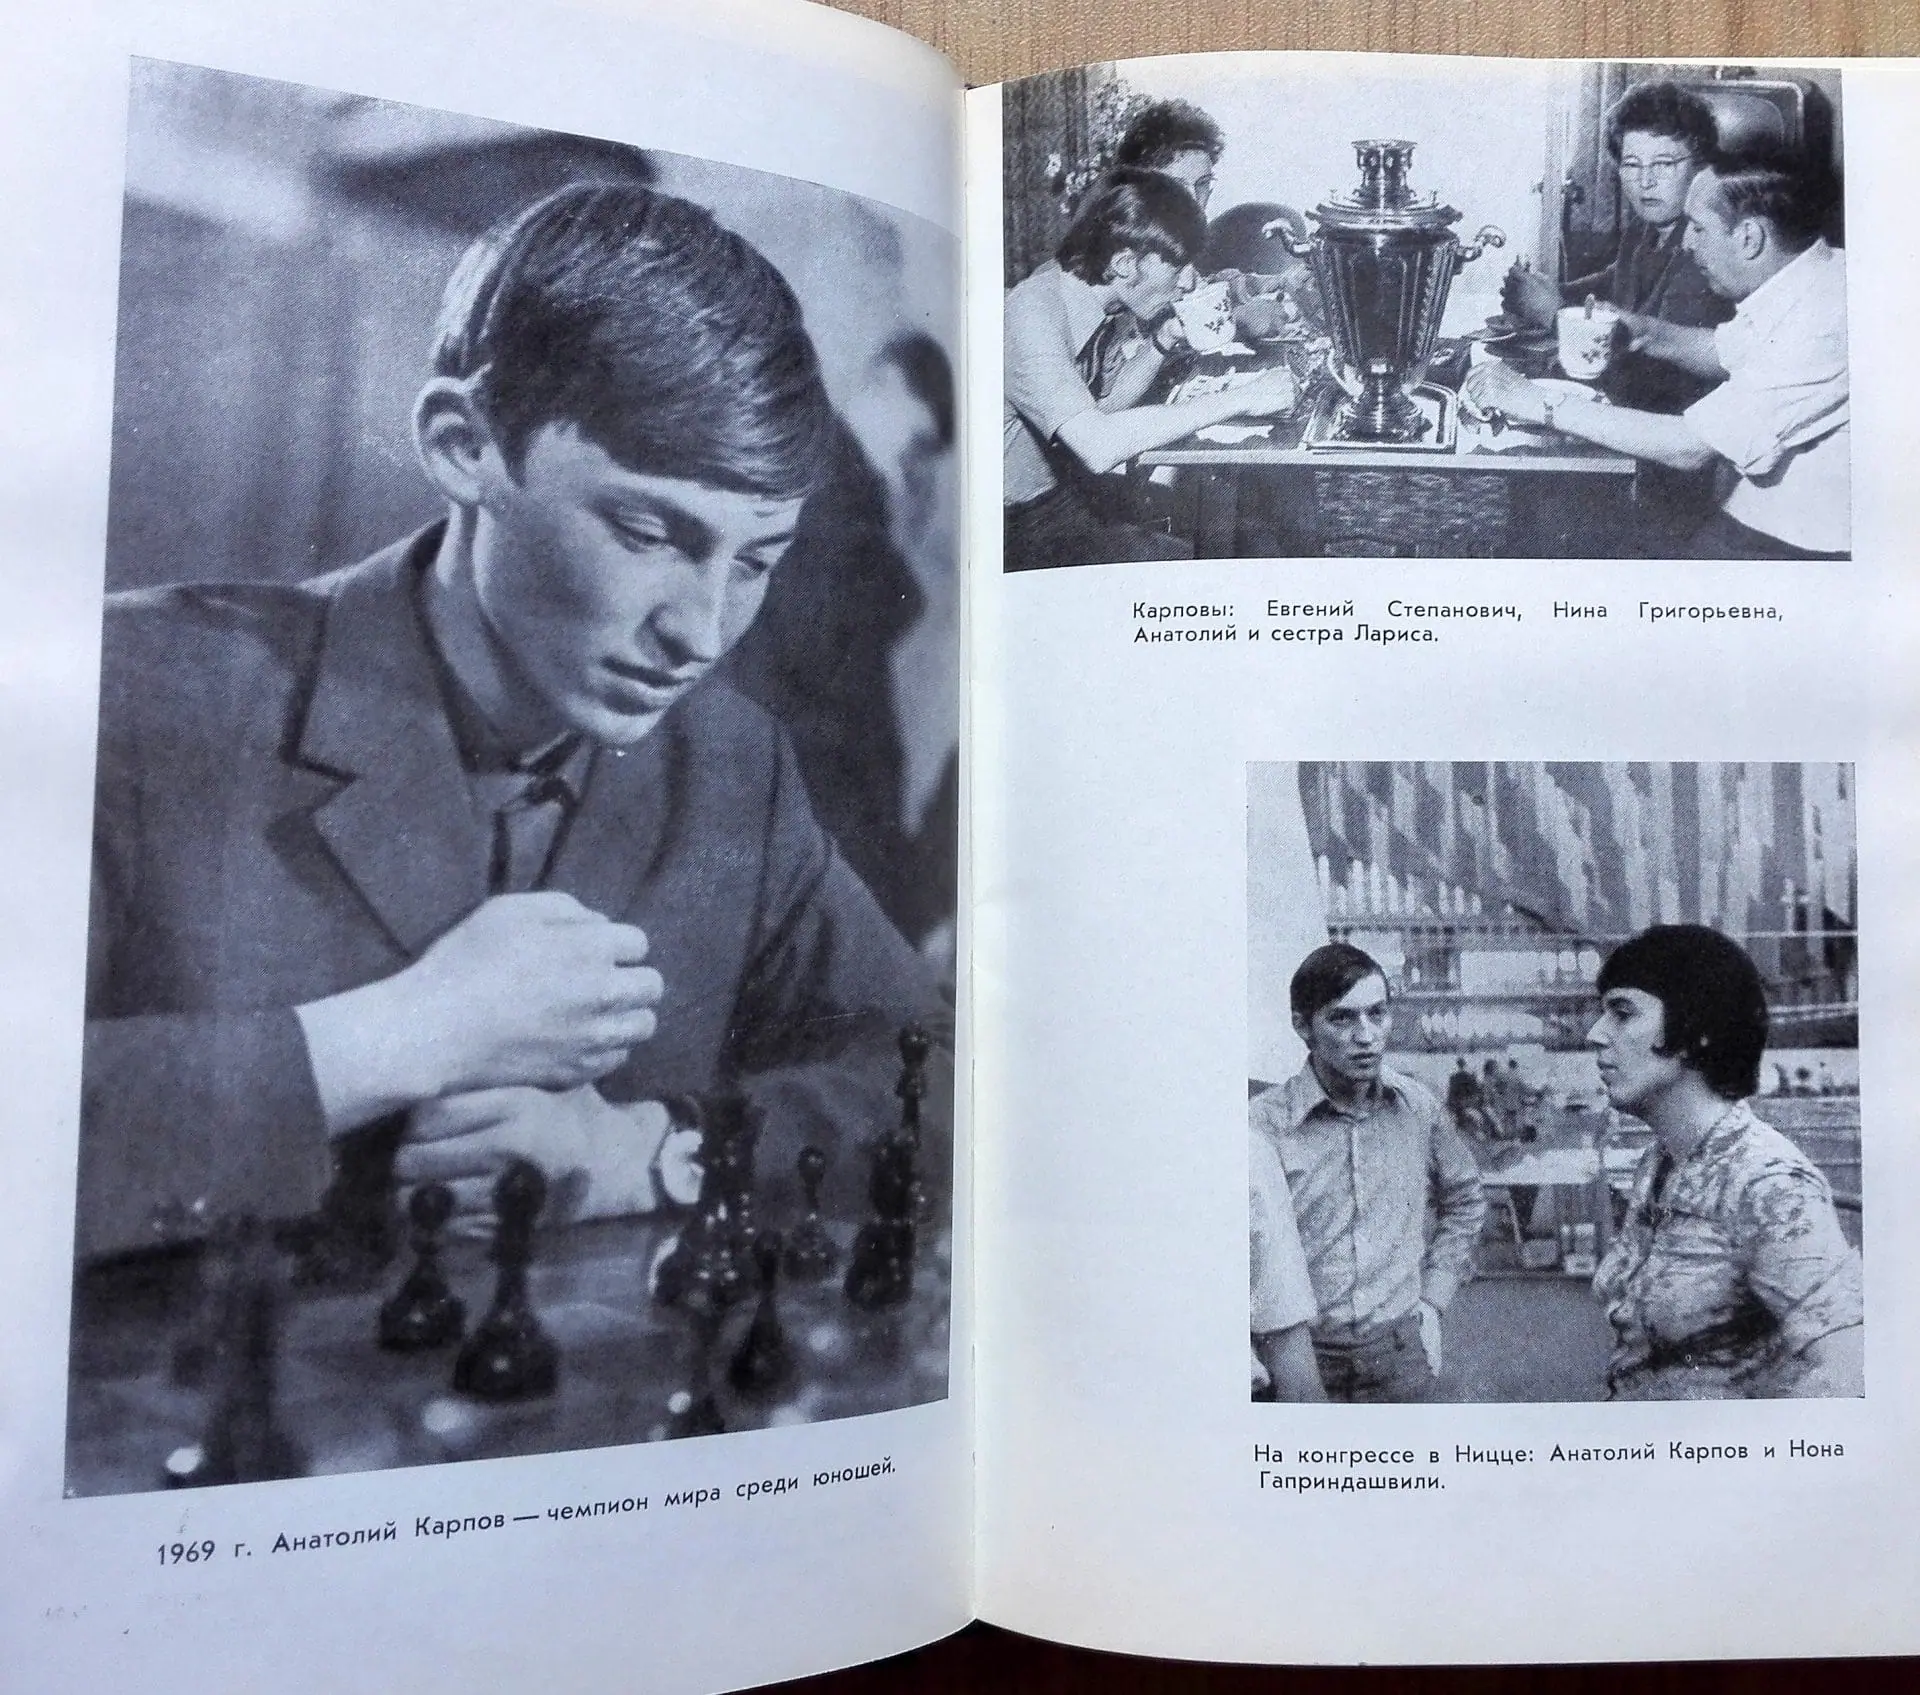 soviet chess